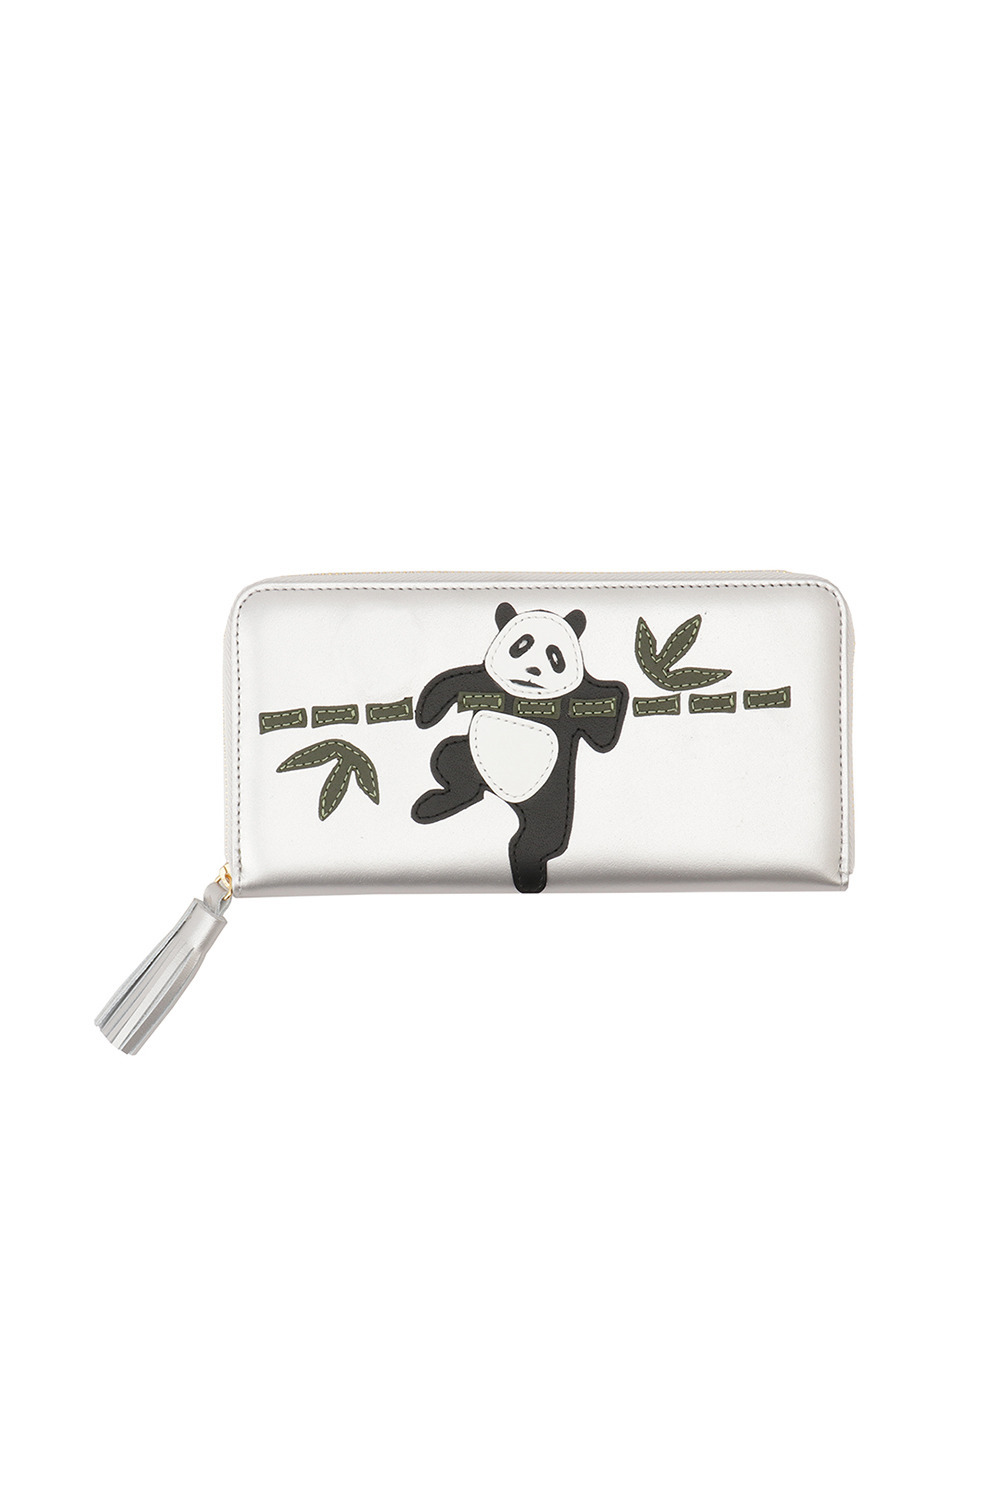 Bamboo PANDA large wallet 詳細画像 シルバー